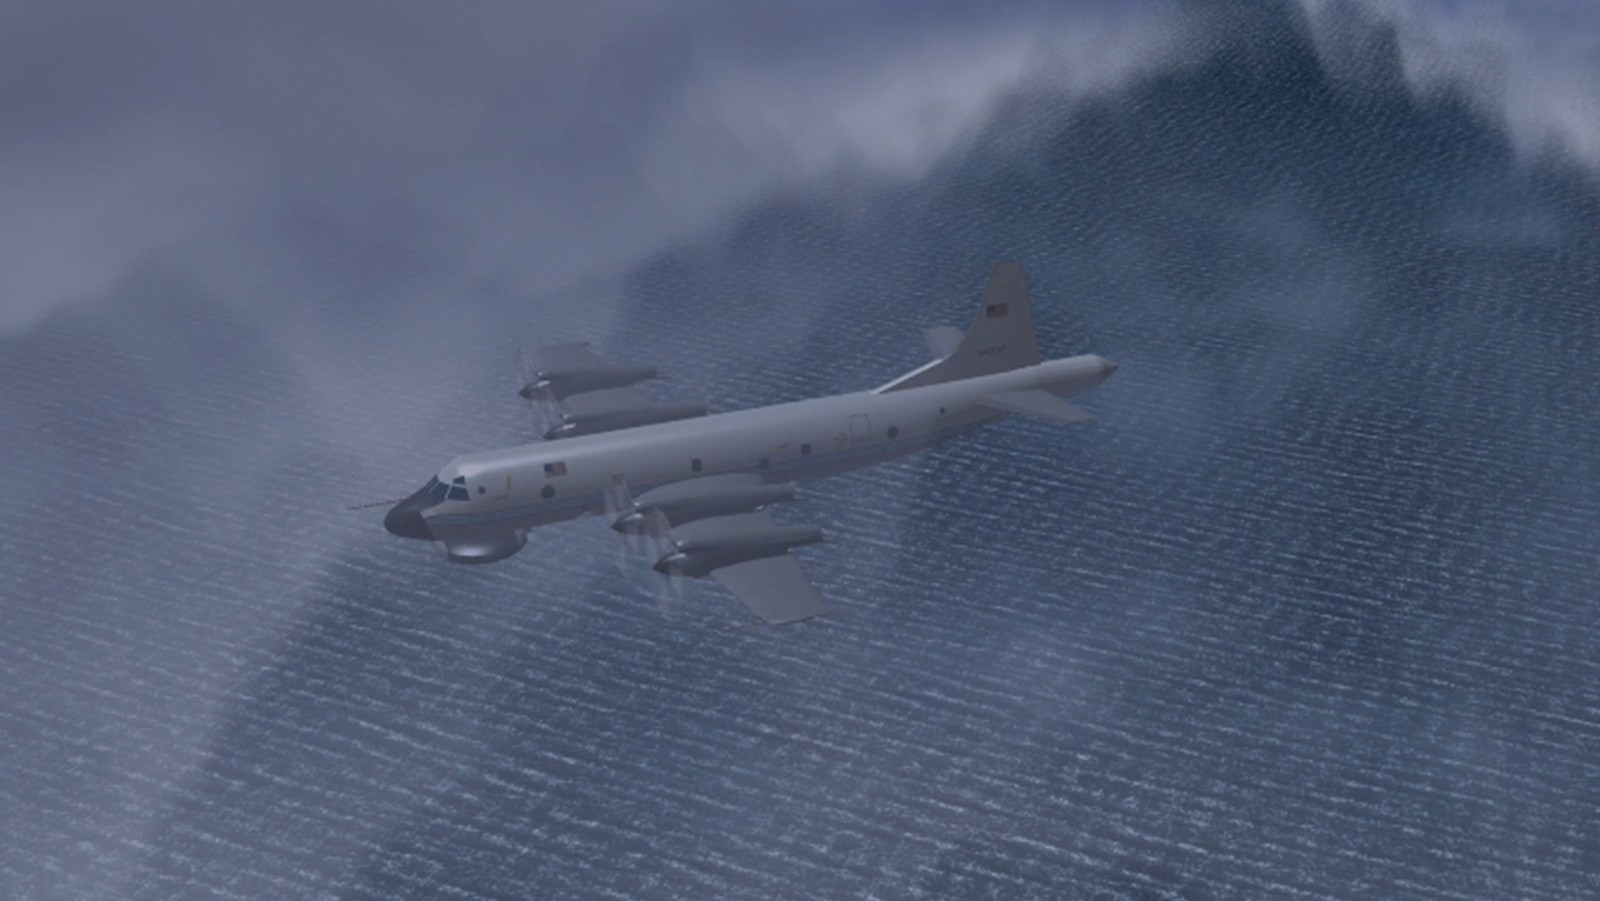 Imagen de la animación de la sonda del P-3. Crédito de la foto: NOAA.